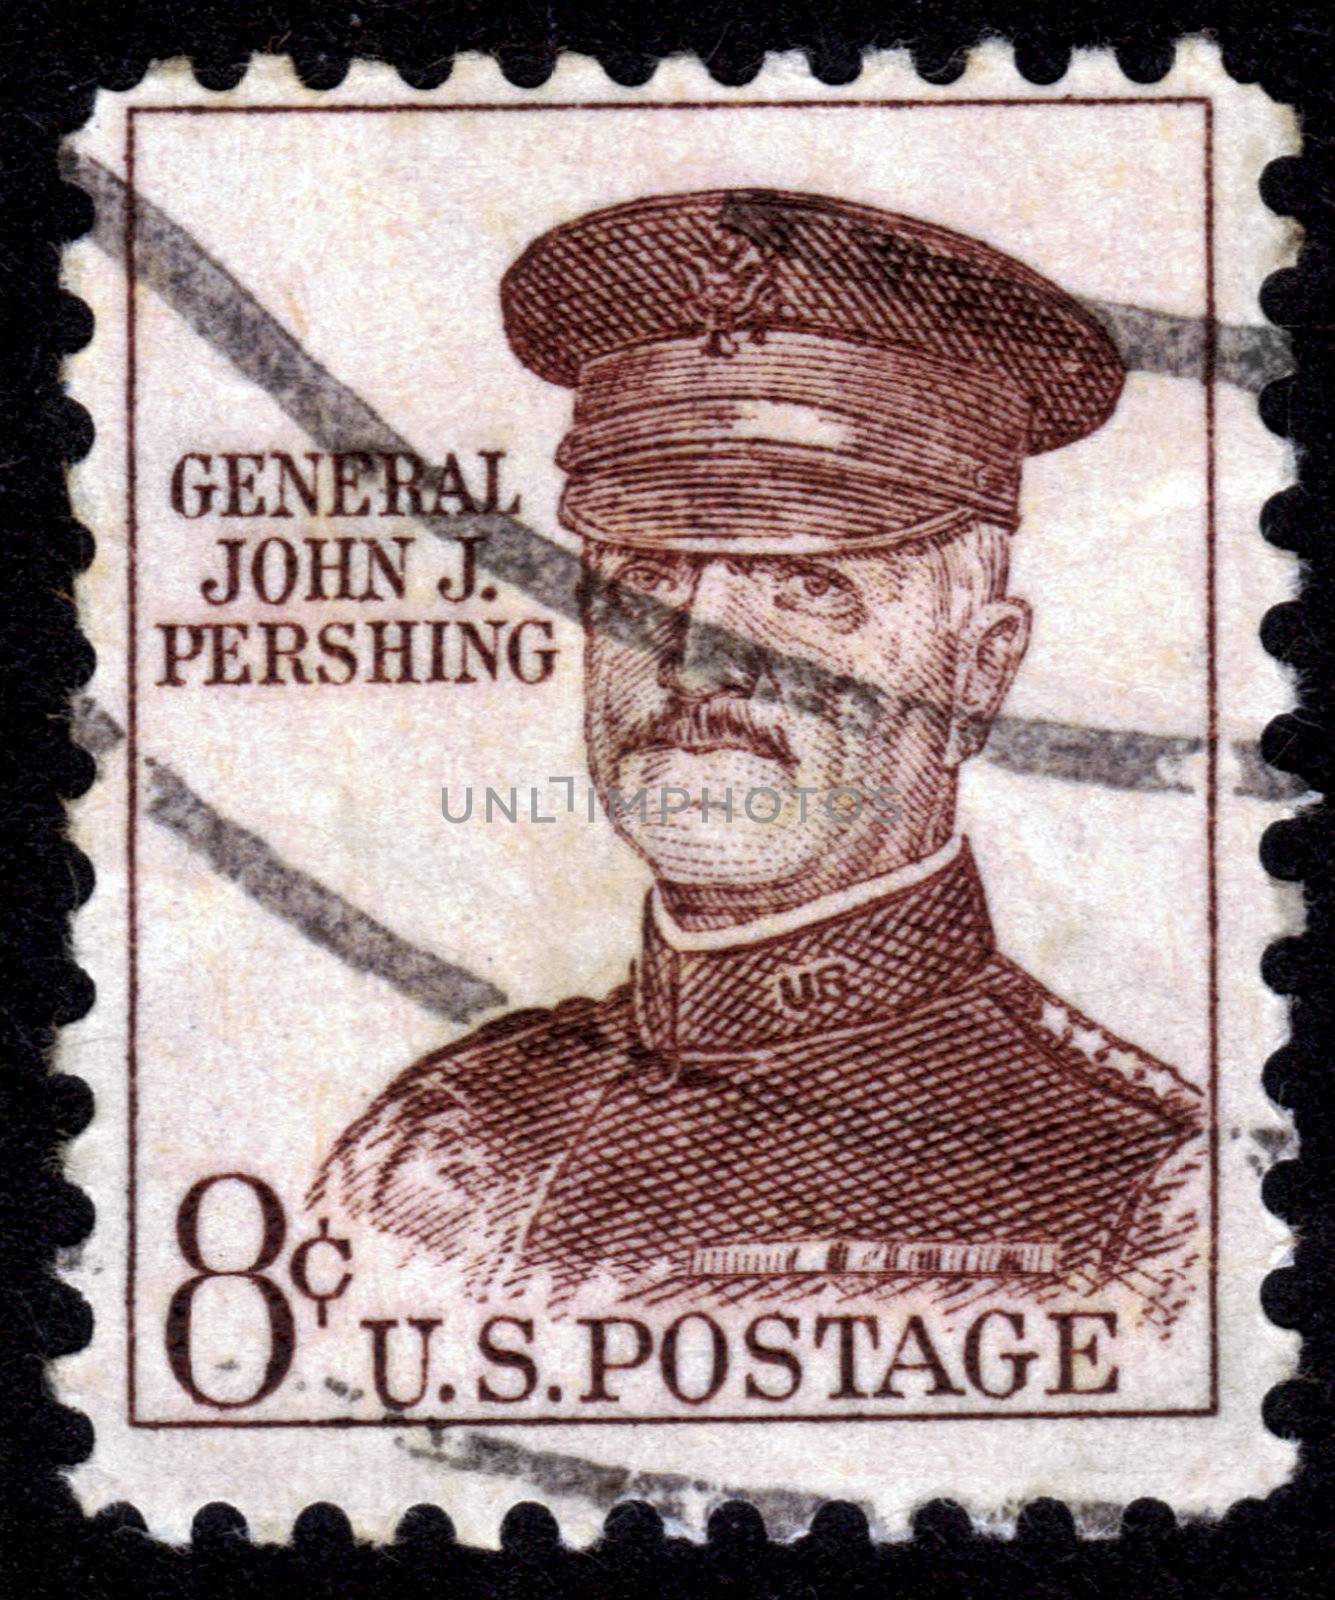 Stamp With General John J. Pershing by irisphoto4